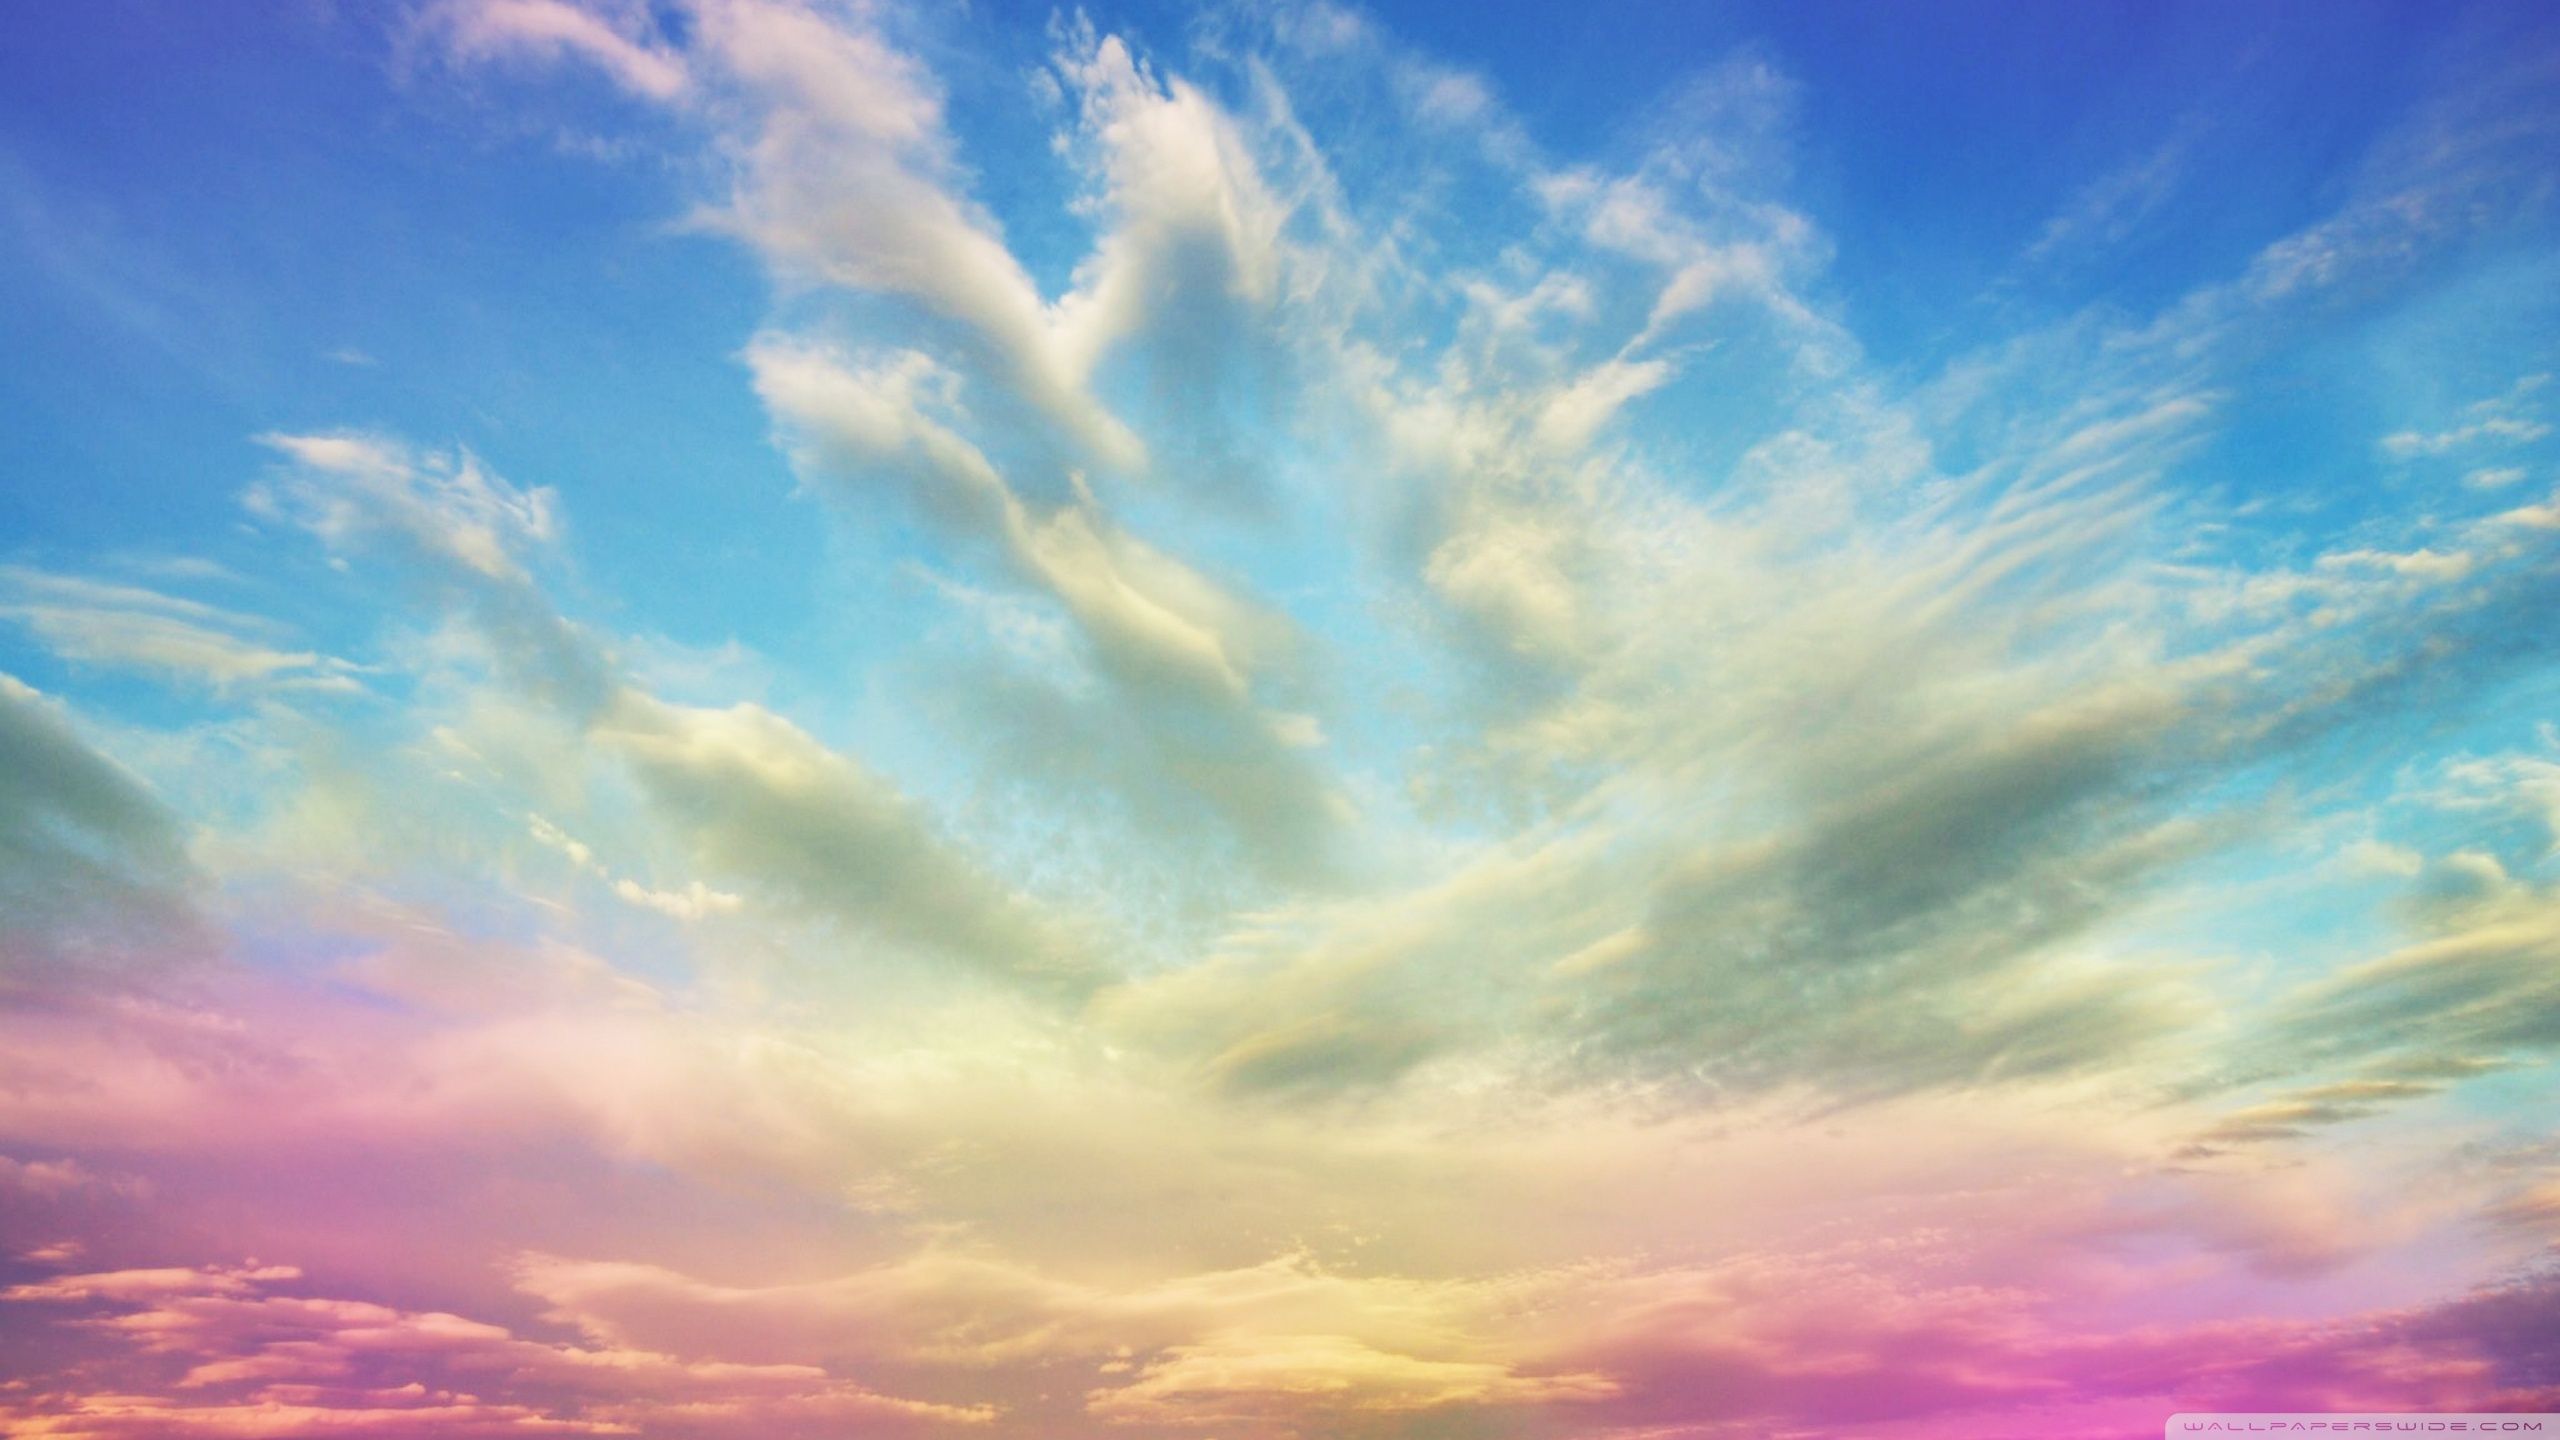 Pink Clouds Ultra HD Desktop Background Wallpaper for 4K UHD TV, Tablet